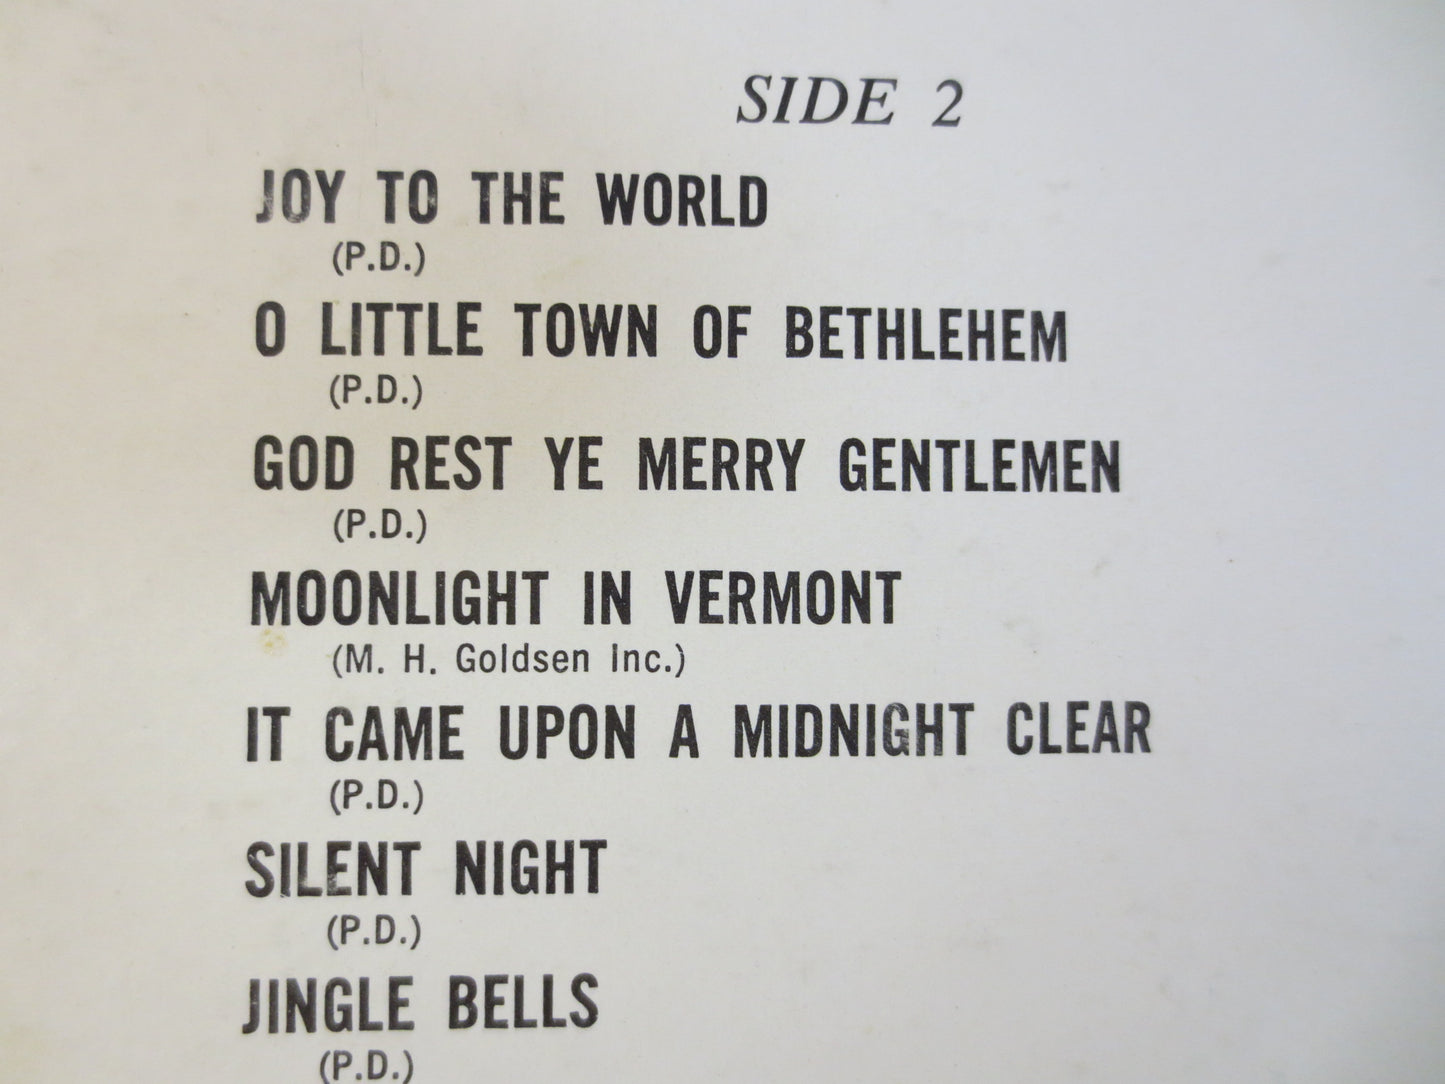 KATE SMITH, KATE SMITH Record, CHRISTMAS Album, Christmas Songs, Christmas Record, Christmas Vinyl, Christmas Lp, Vinyl, 1966 Records